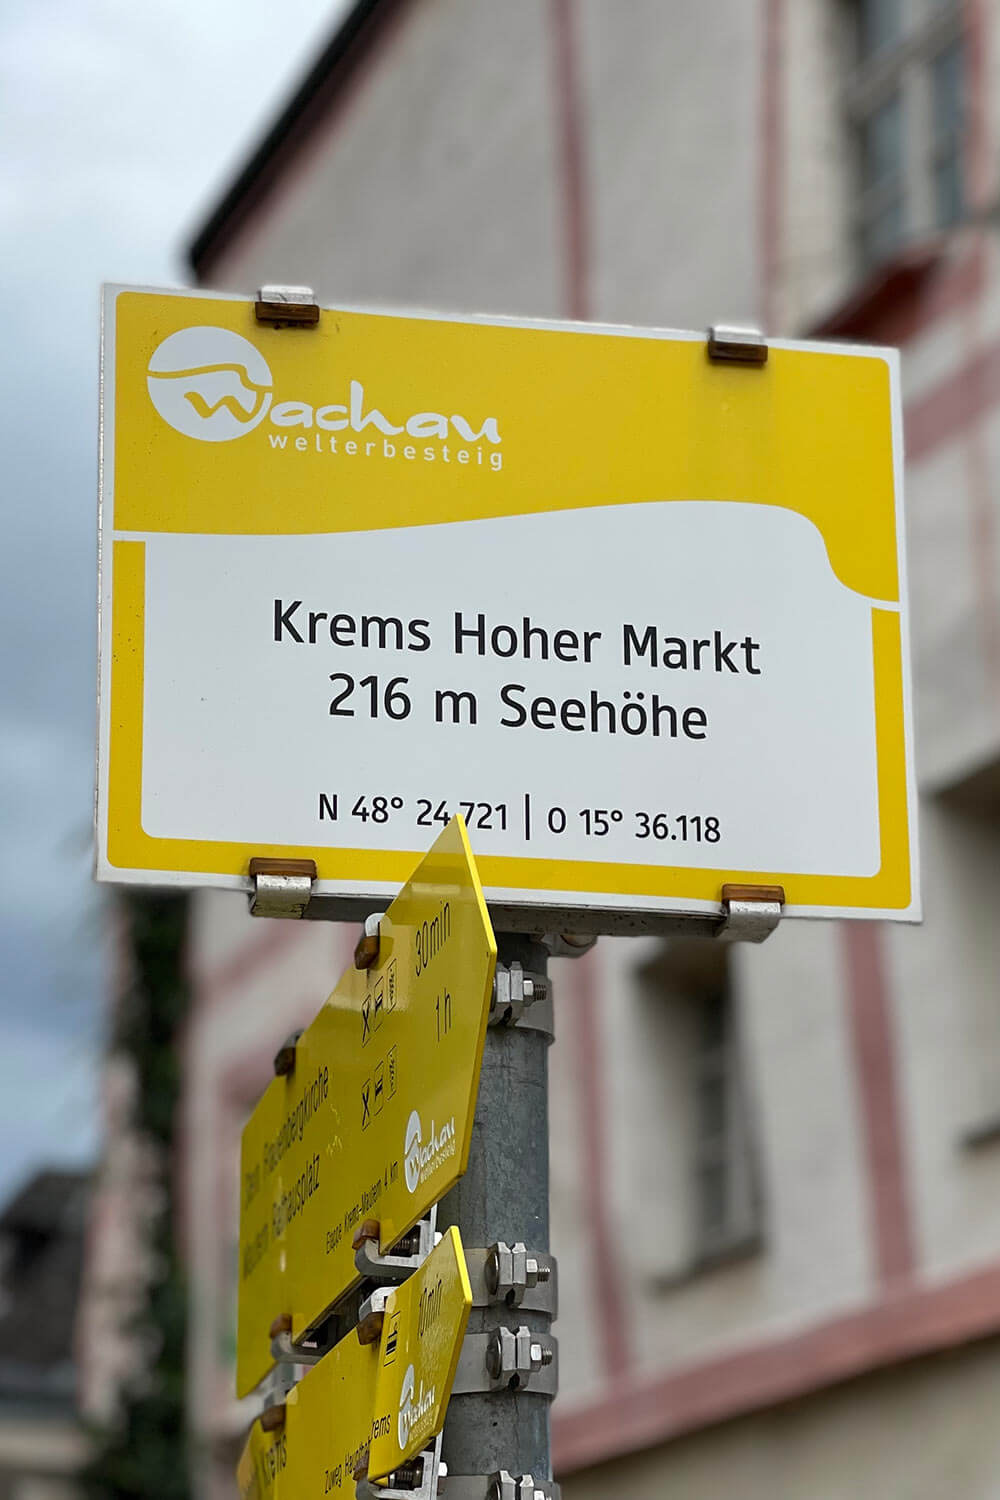 hoher-markt_krems_welterbesteig_wachau